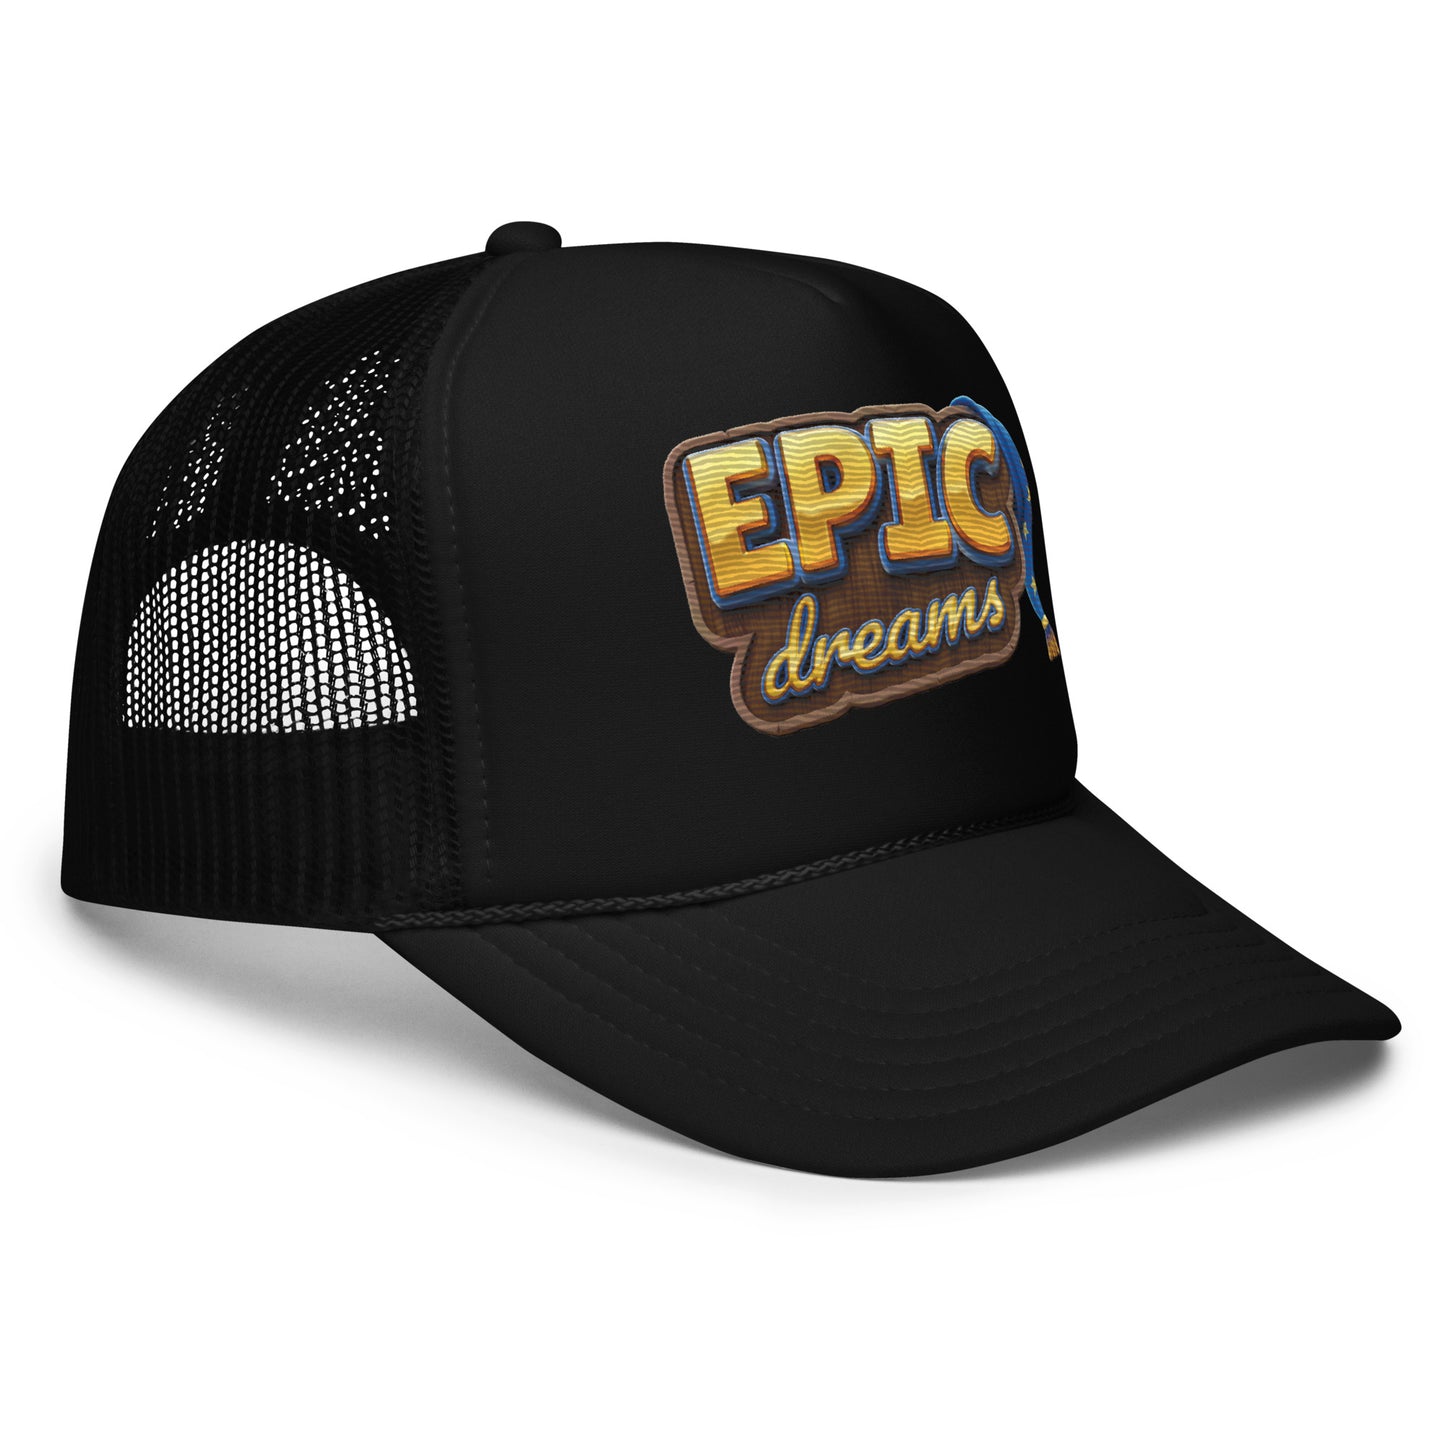 EPIC DREAMS Foam trucker hat